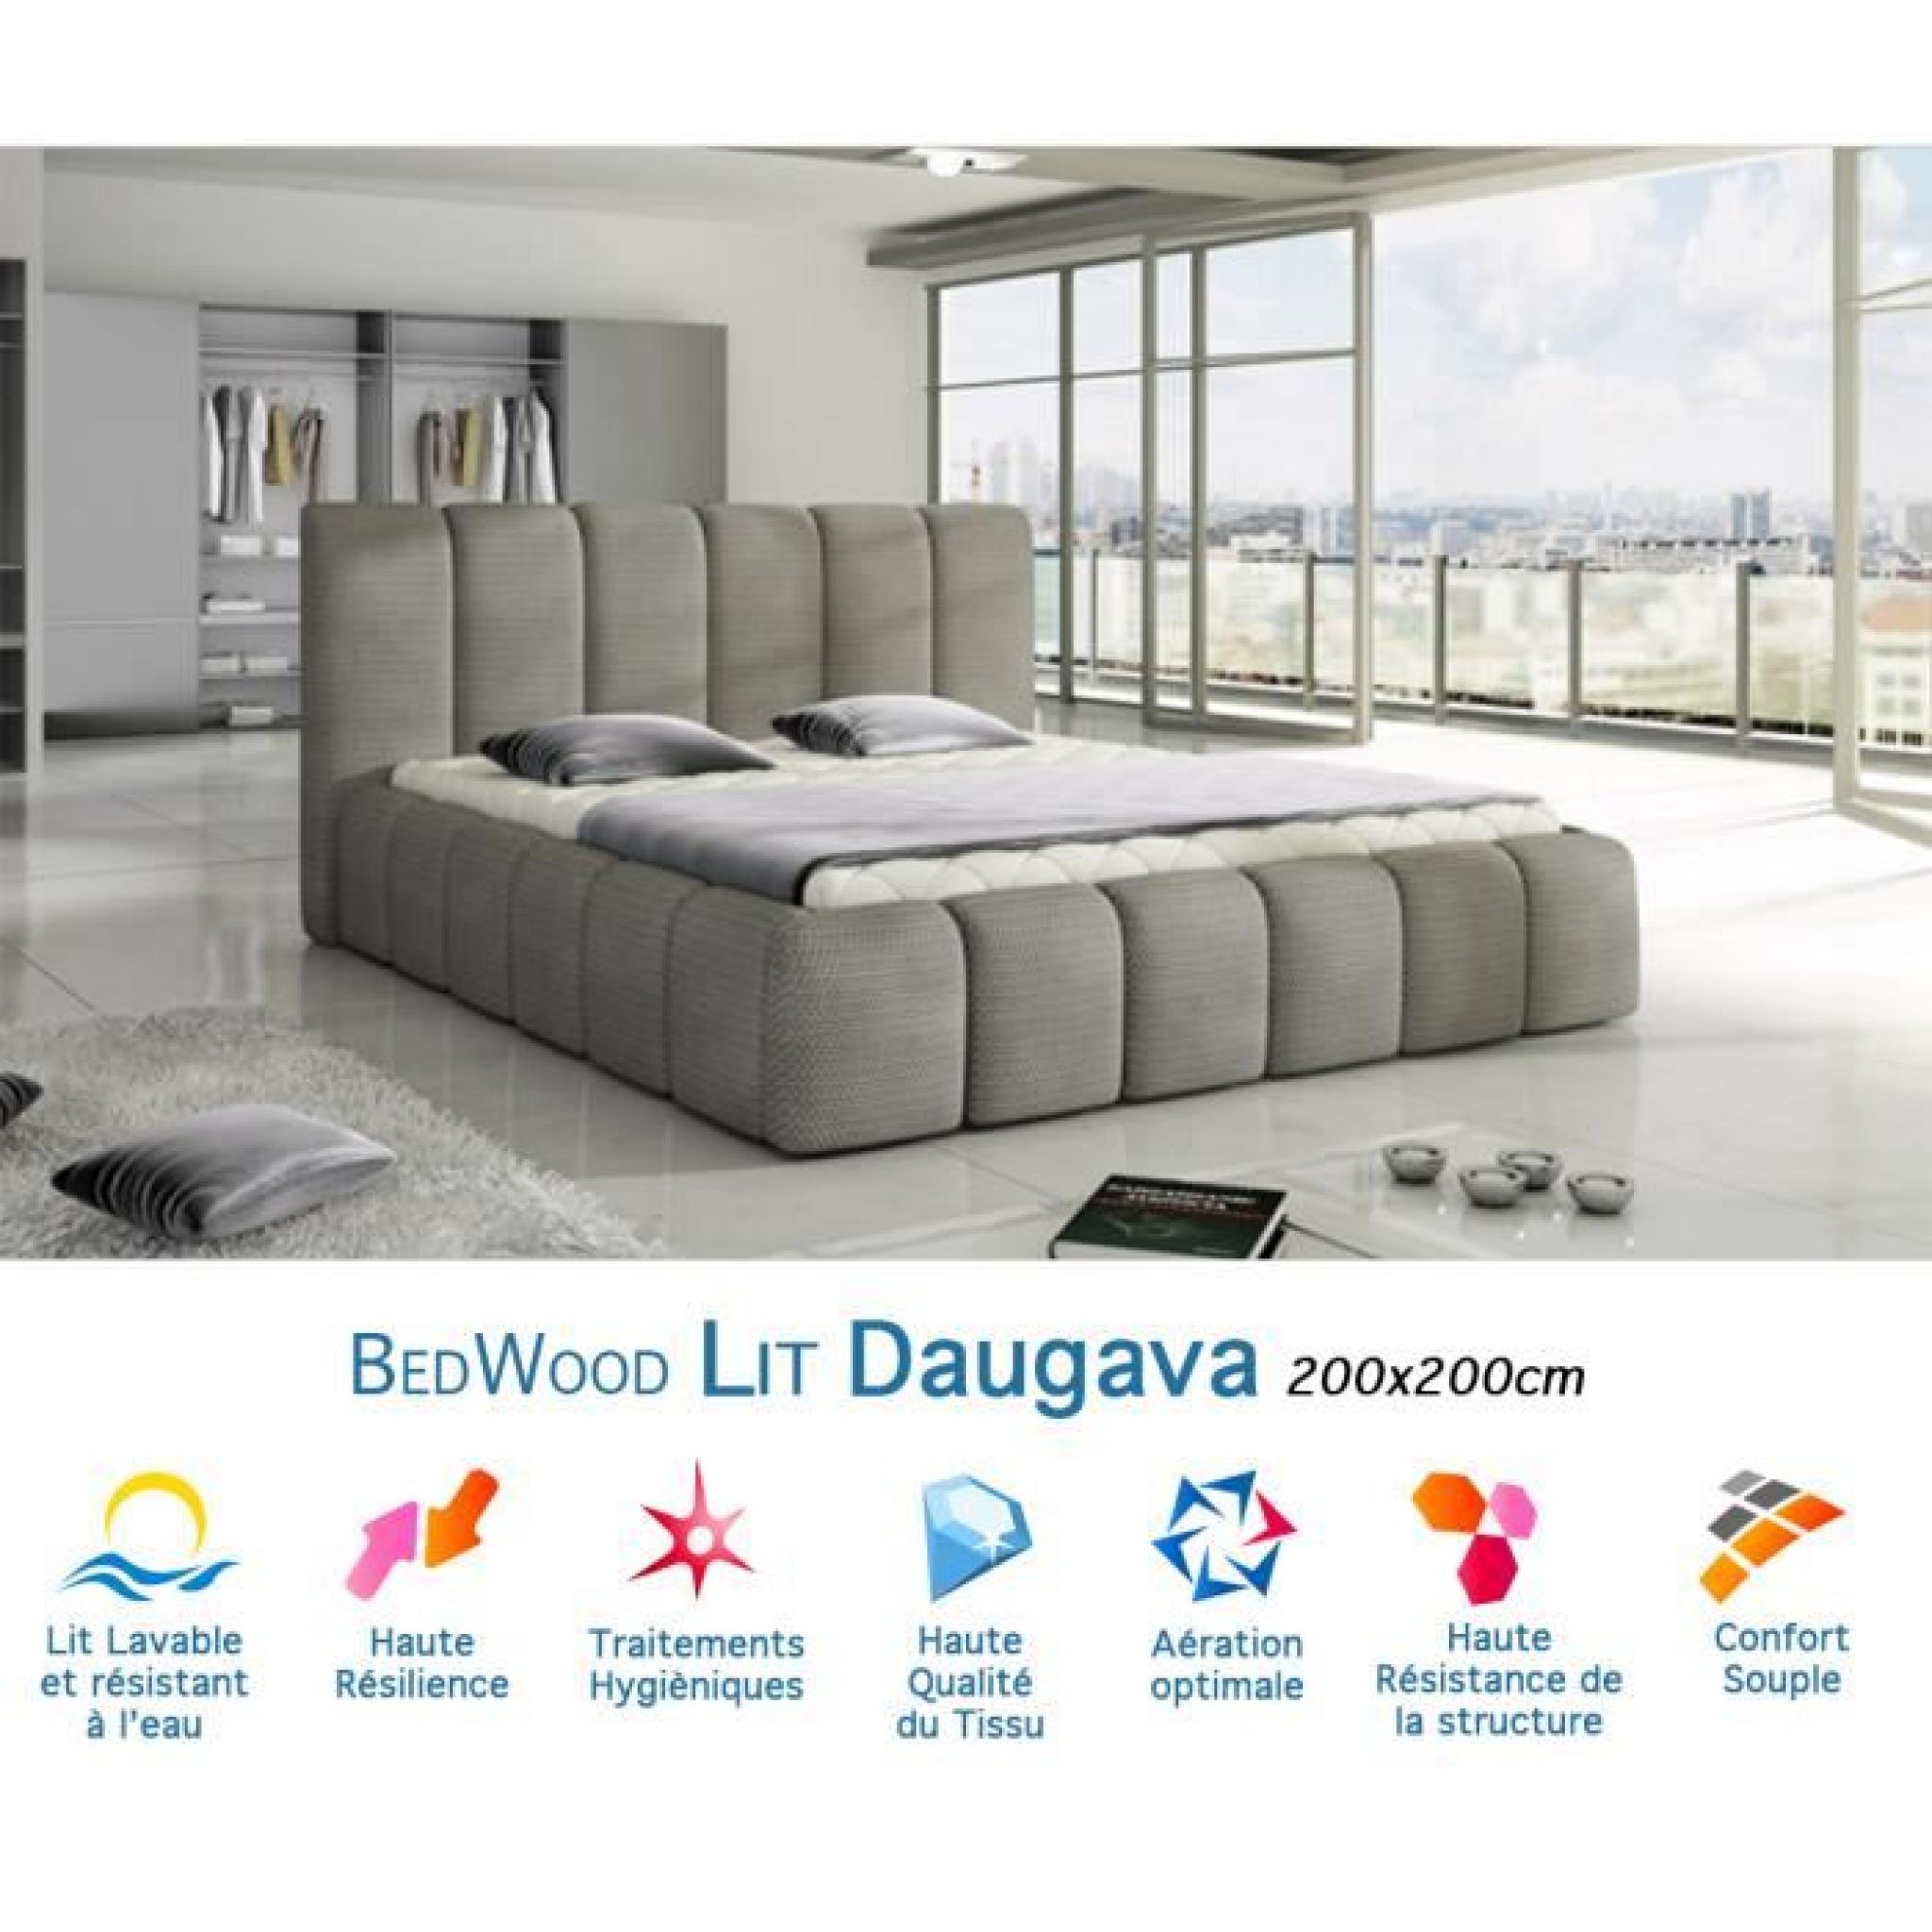 Lit Design Bedwood Daugava 200x200cm